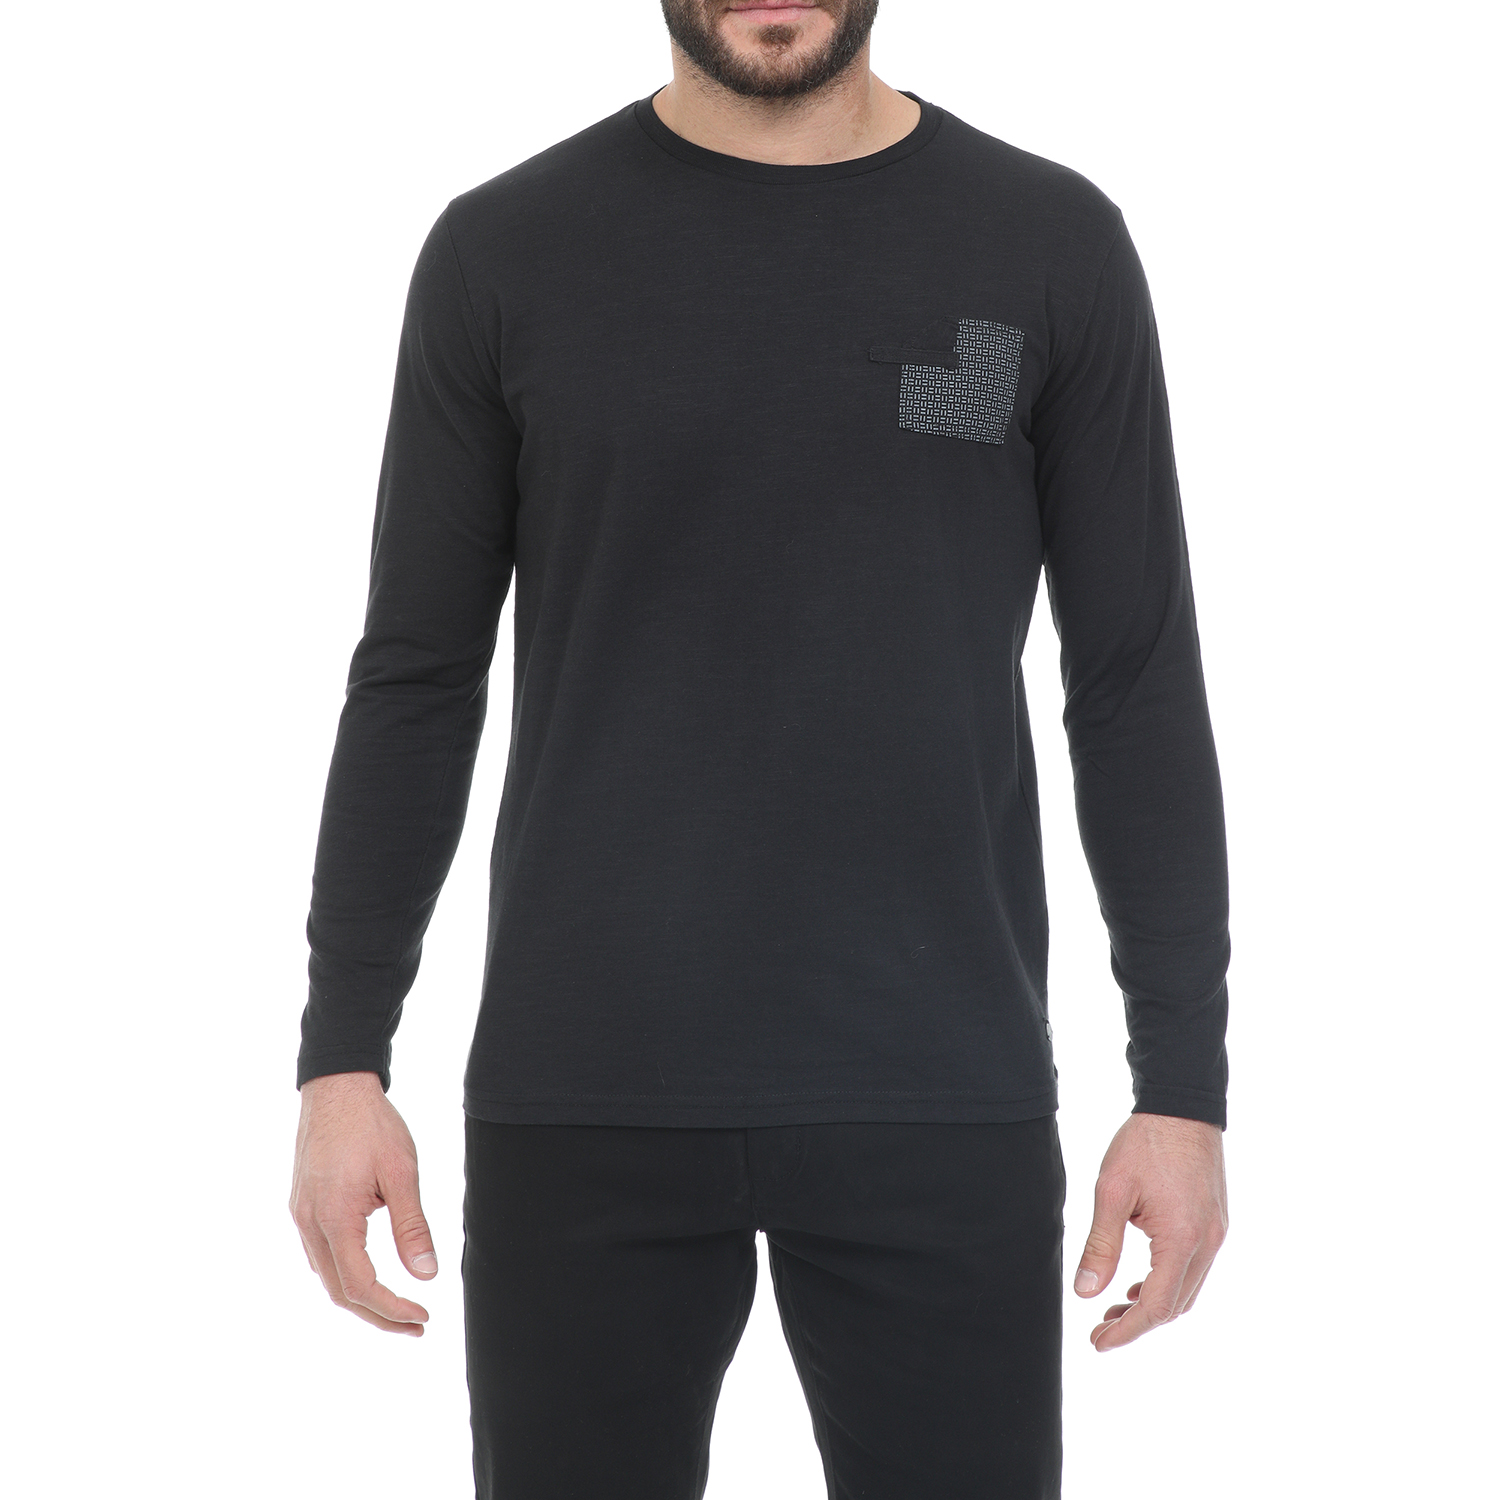 Ανδρικά/Ρούχα/Μπλούζες/Μακρυμάνικες GREENWOOD - Ανδρική μπλούζα GREENWOOD μαύρη